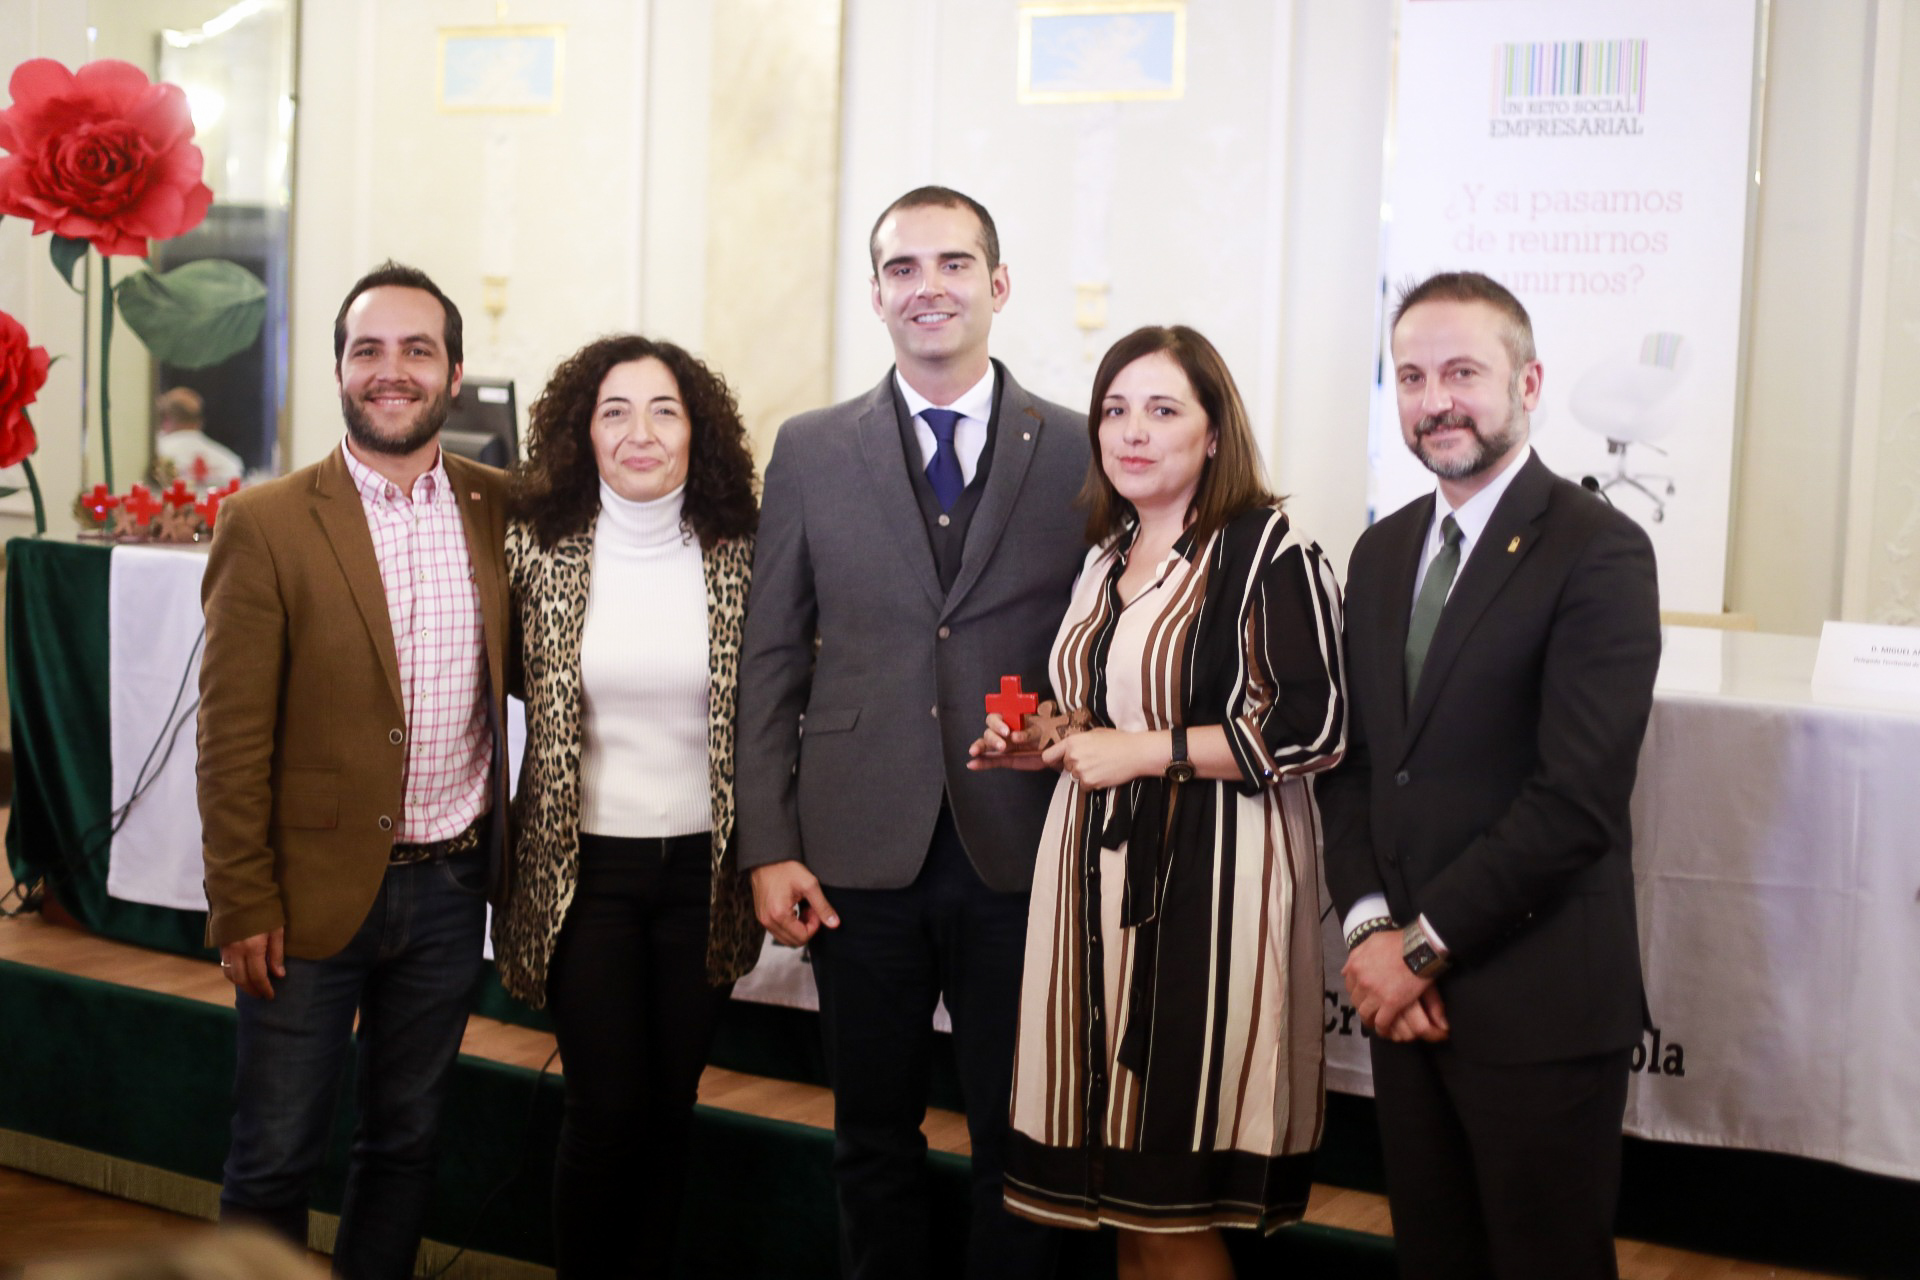 El alcalde felicita a todas las empresas que en Almería “hacen bien las cosas” y “trabajan para crear más oportunidades para más gente”